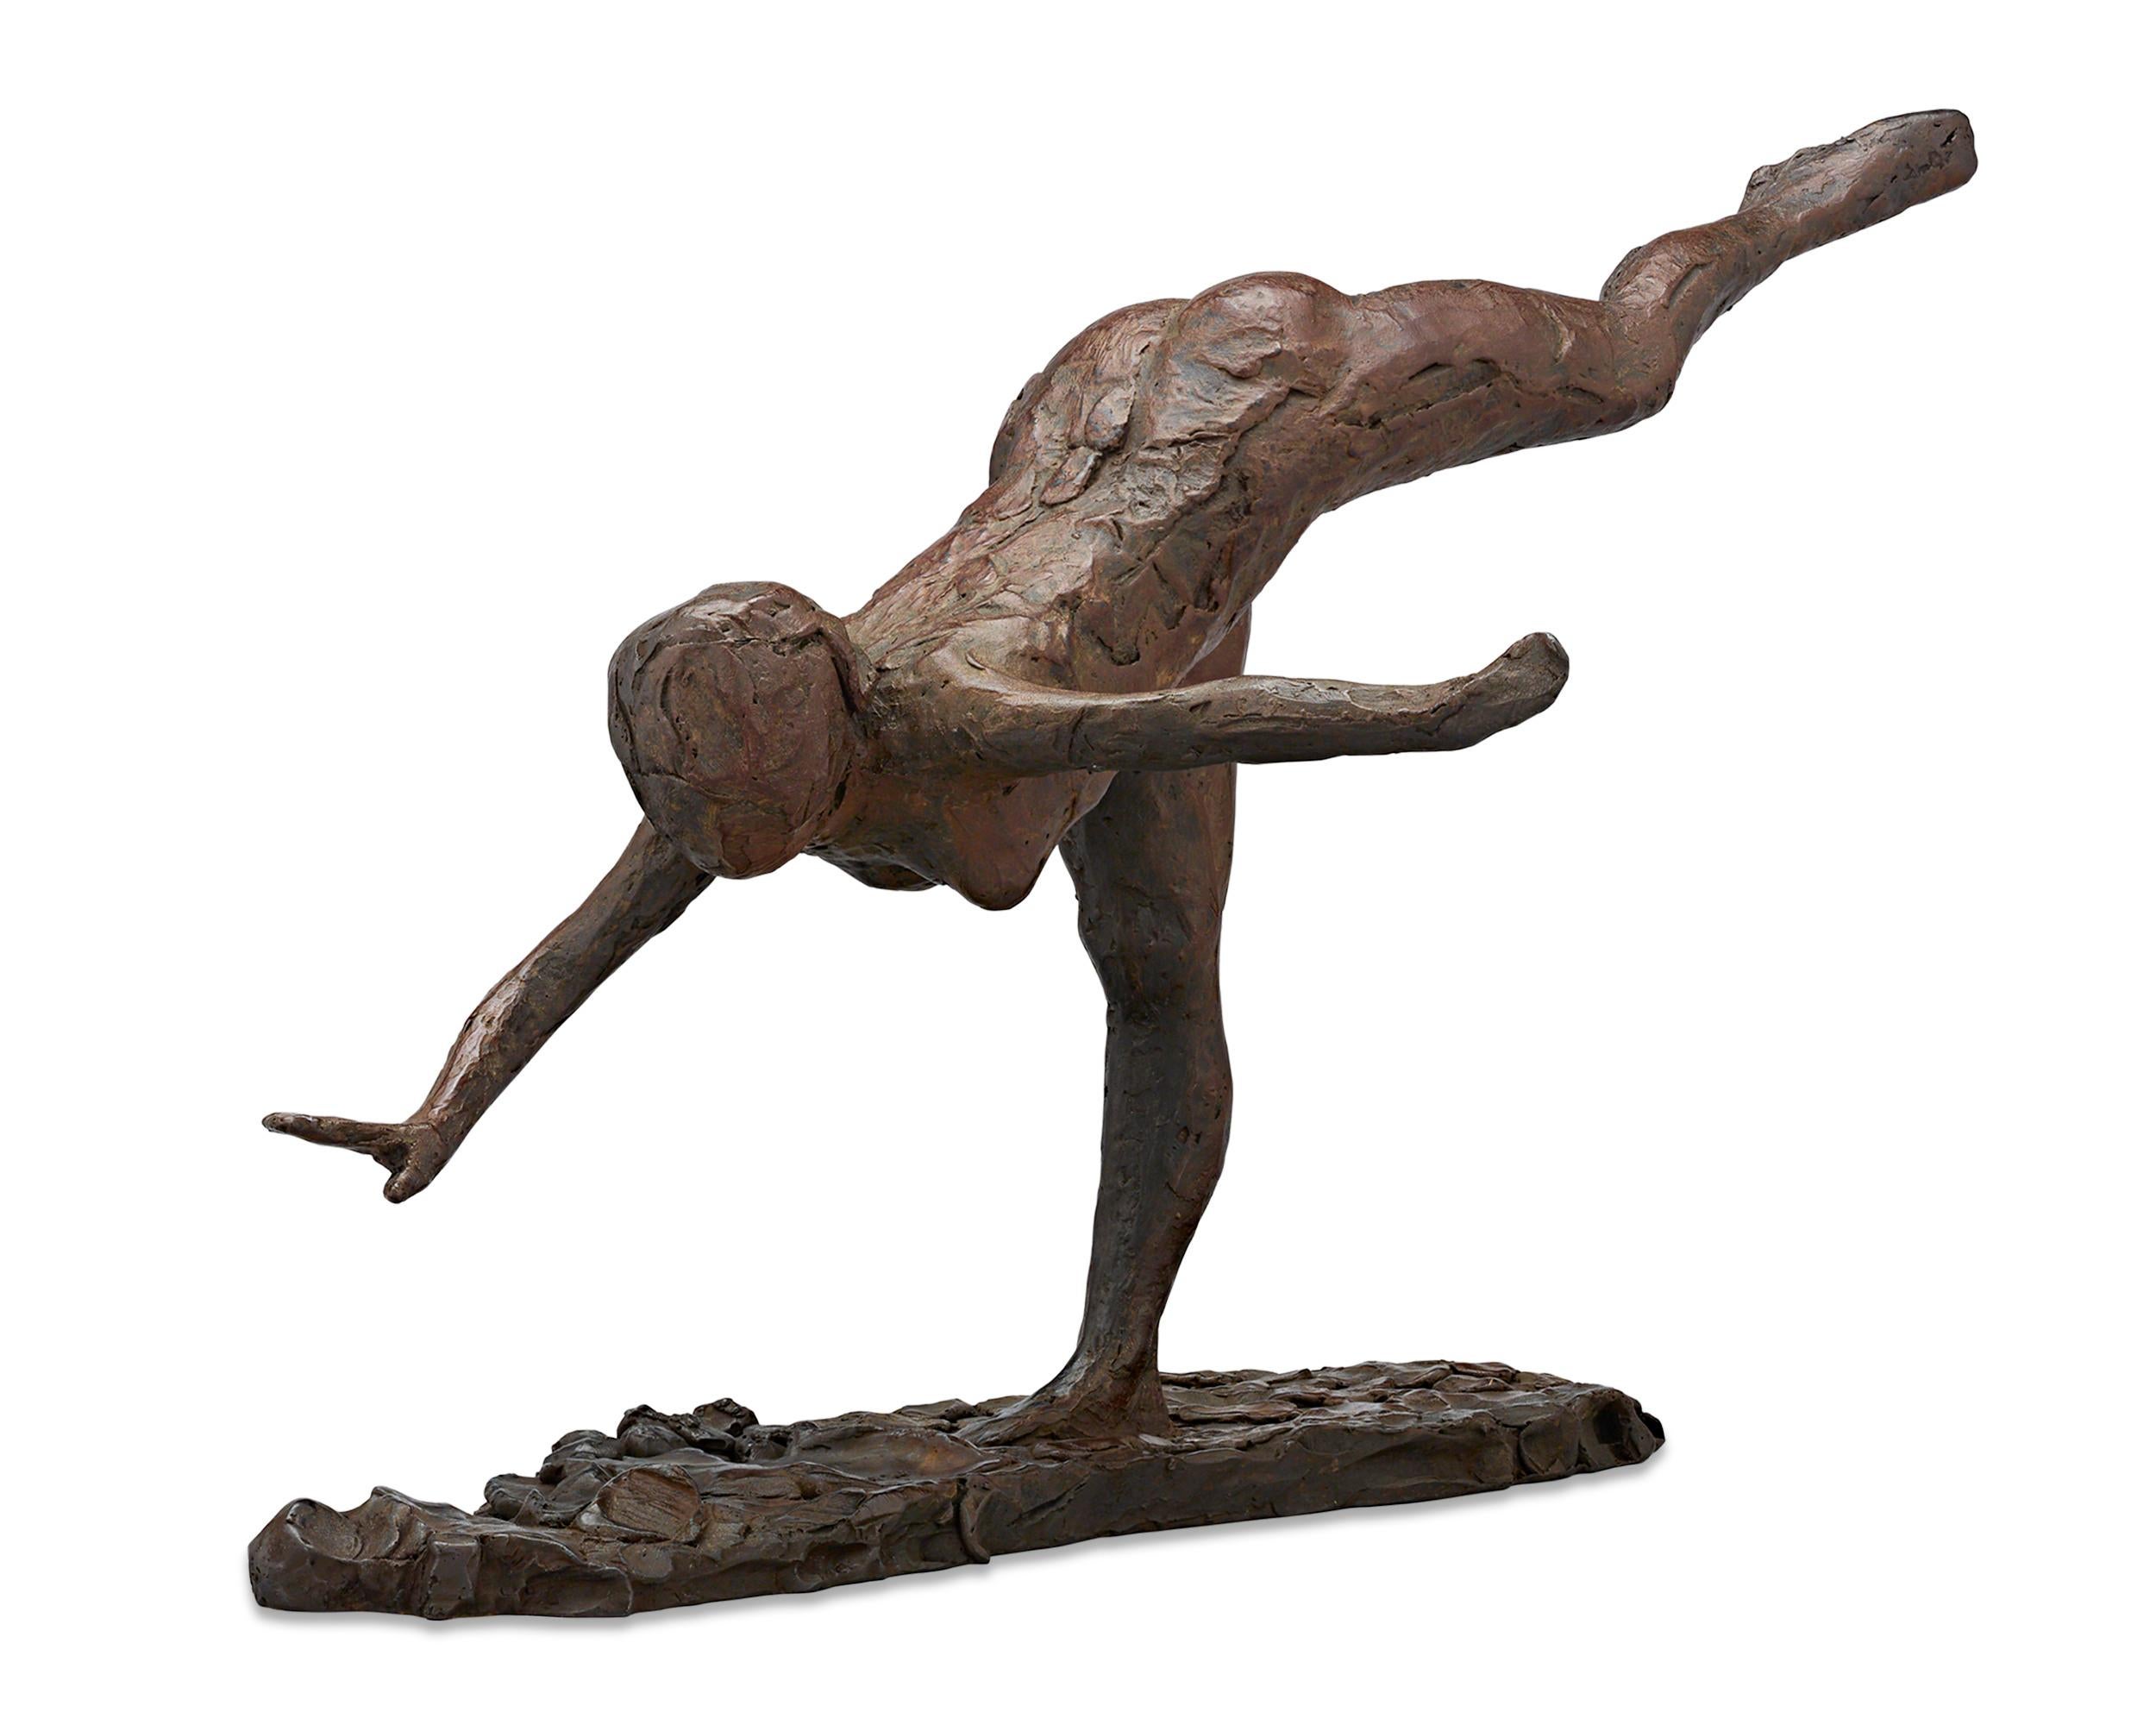 Arabesches Arabesken auf der rechten Seite, rechte Hand dicht zur Erde, rechte Arm außen – Sculpture von Edgar Degas